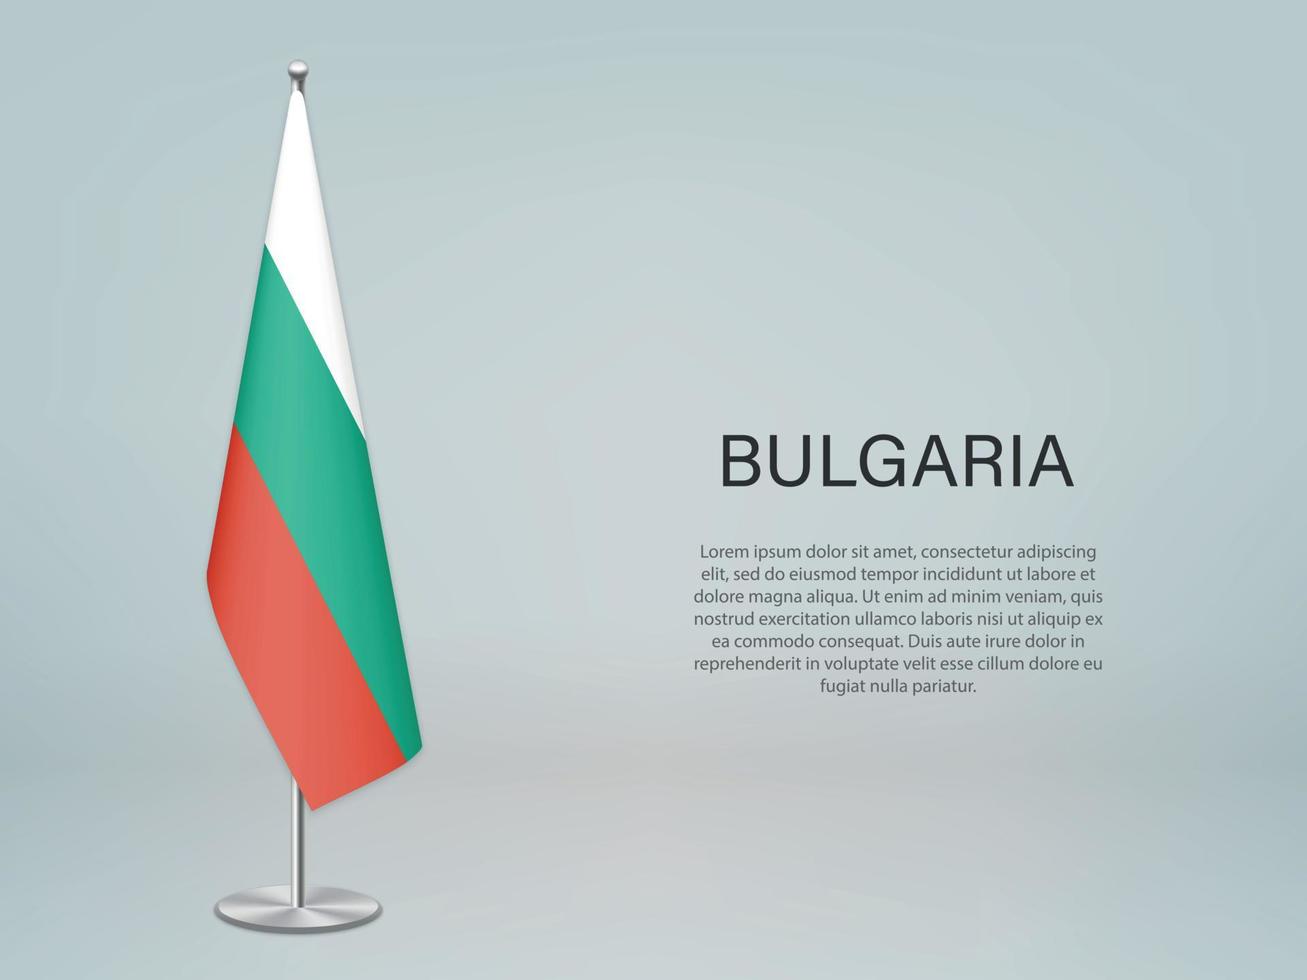 bandera colgante de bulgaria en el stand. plantilla para banner de conferencia vector